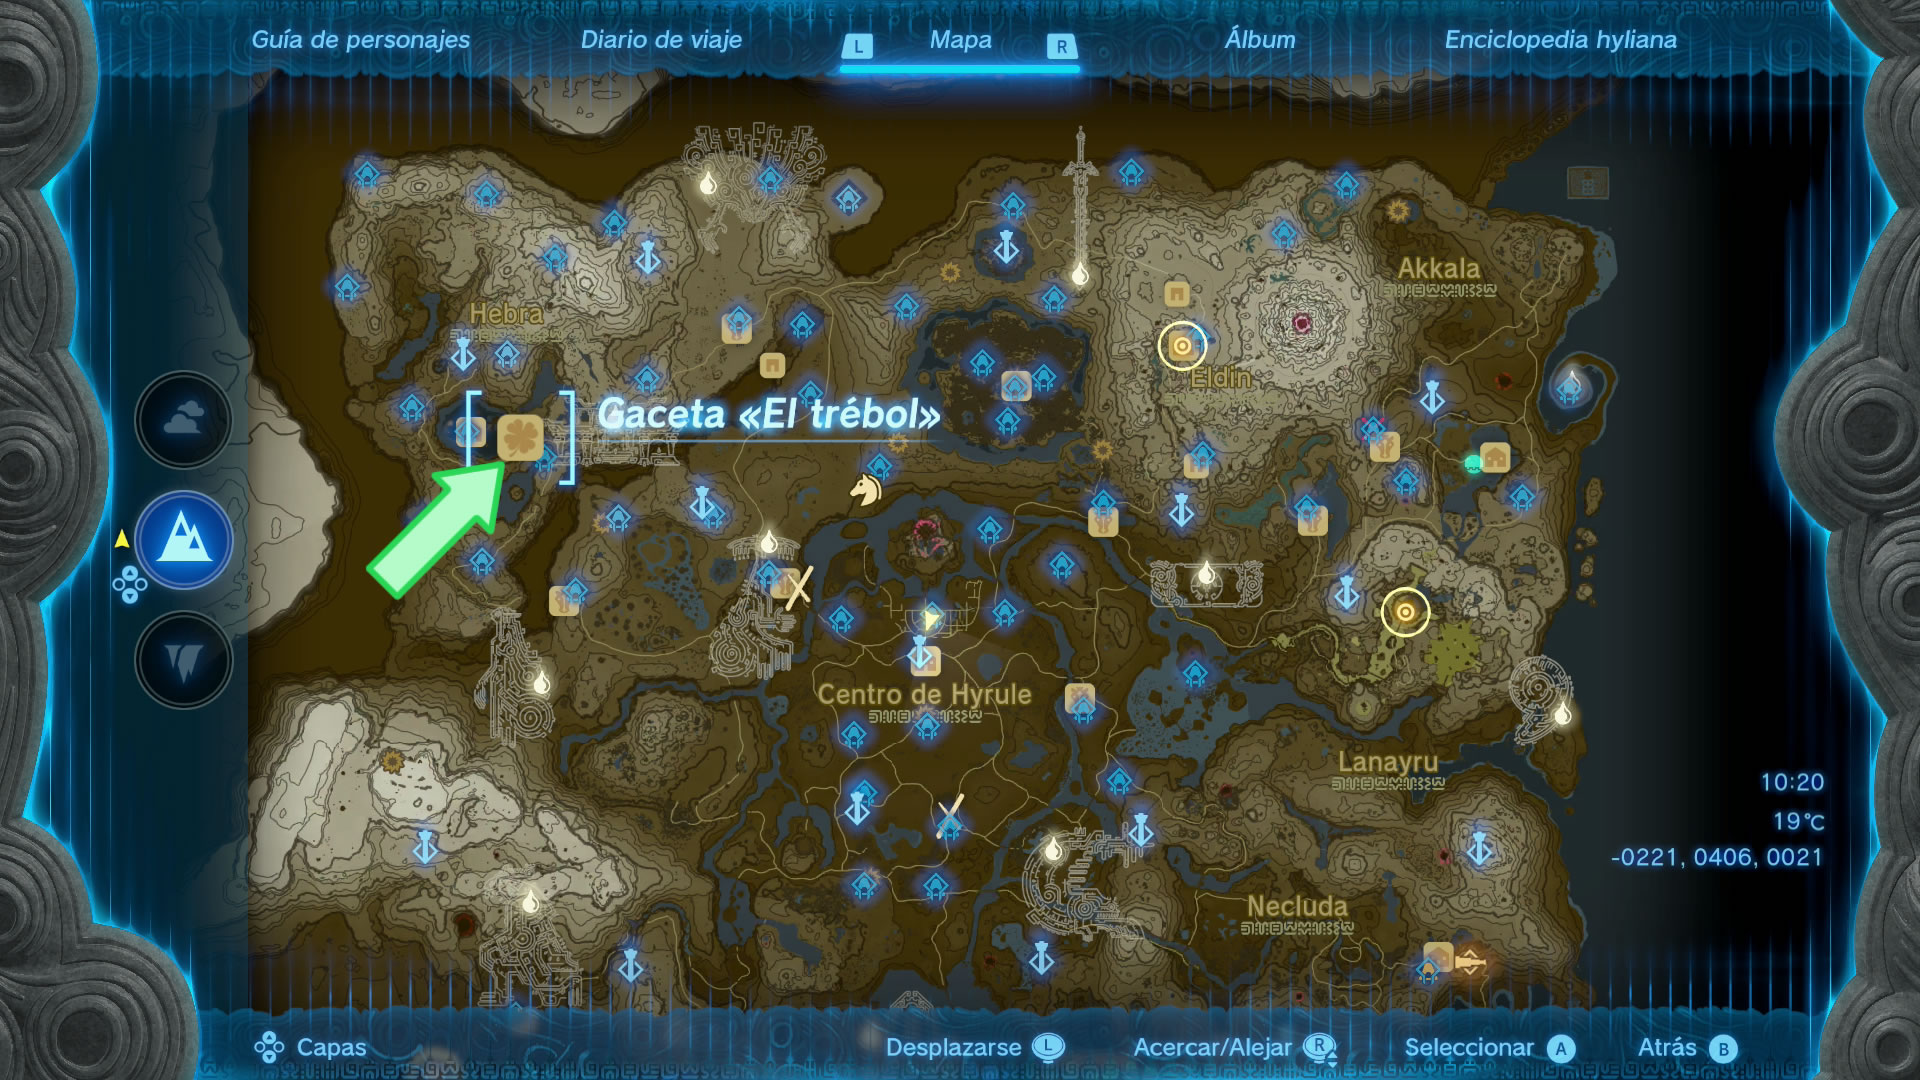 Guía completa de Zelda: Tears of the Kingdom - ¡Todo lo que necesitas saber  para regresar a Hyrule!